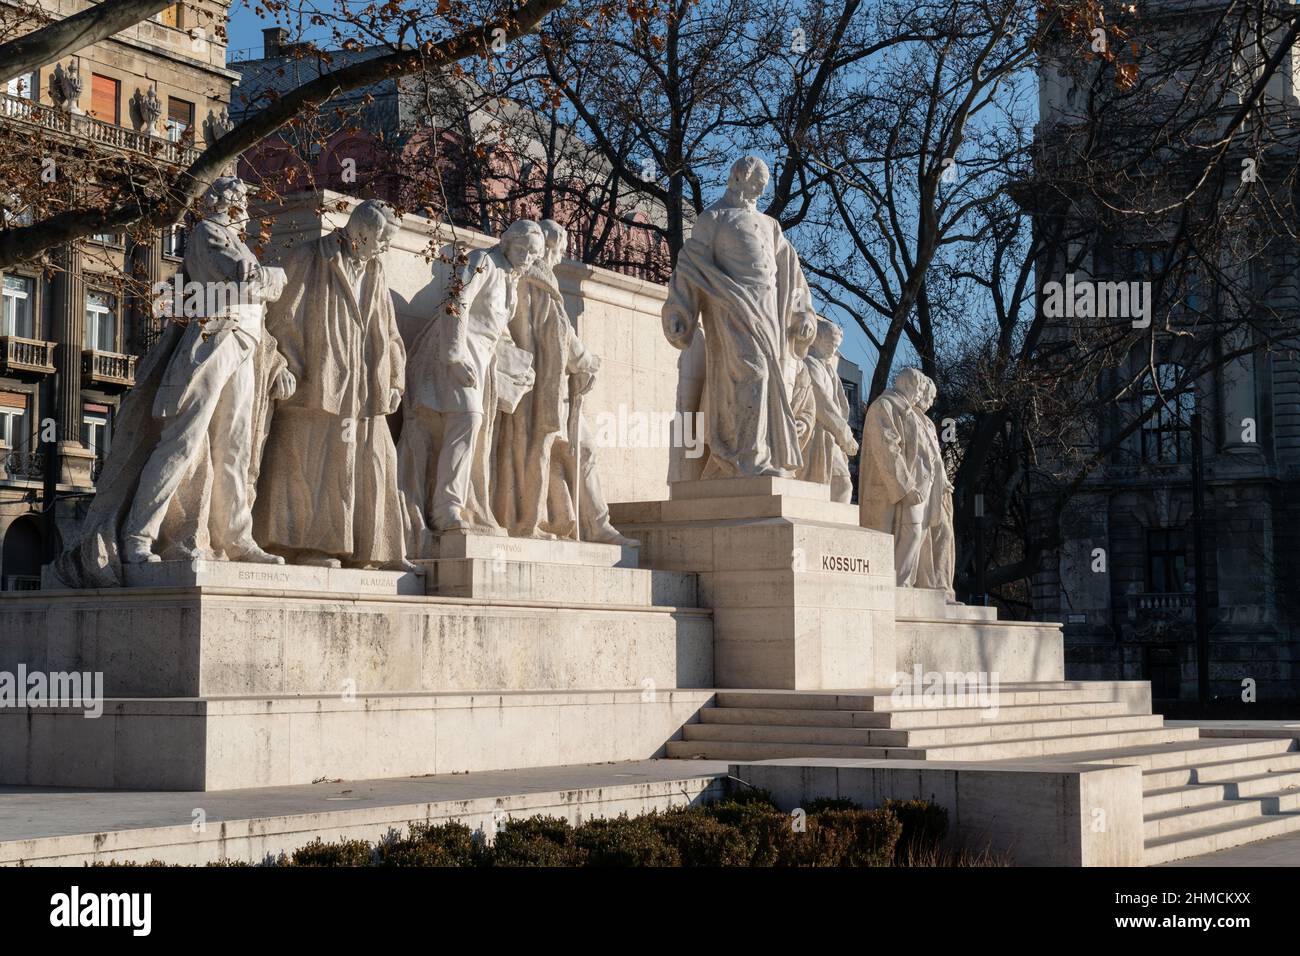 Le Mémorial de Kossuth est un monument public dédié à l'ancien président hongrois Lajos Kossuth sur la place Lajos Kossuth à Budapest en Hongrie Banque D'Images